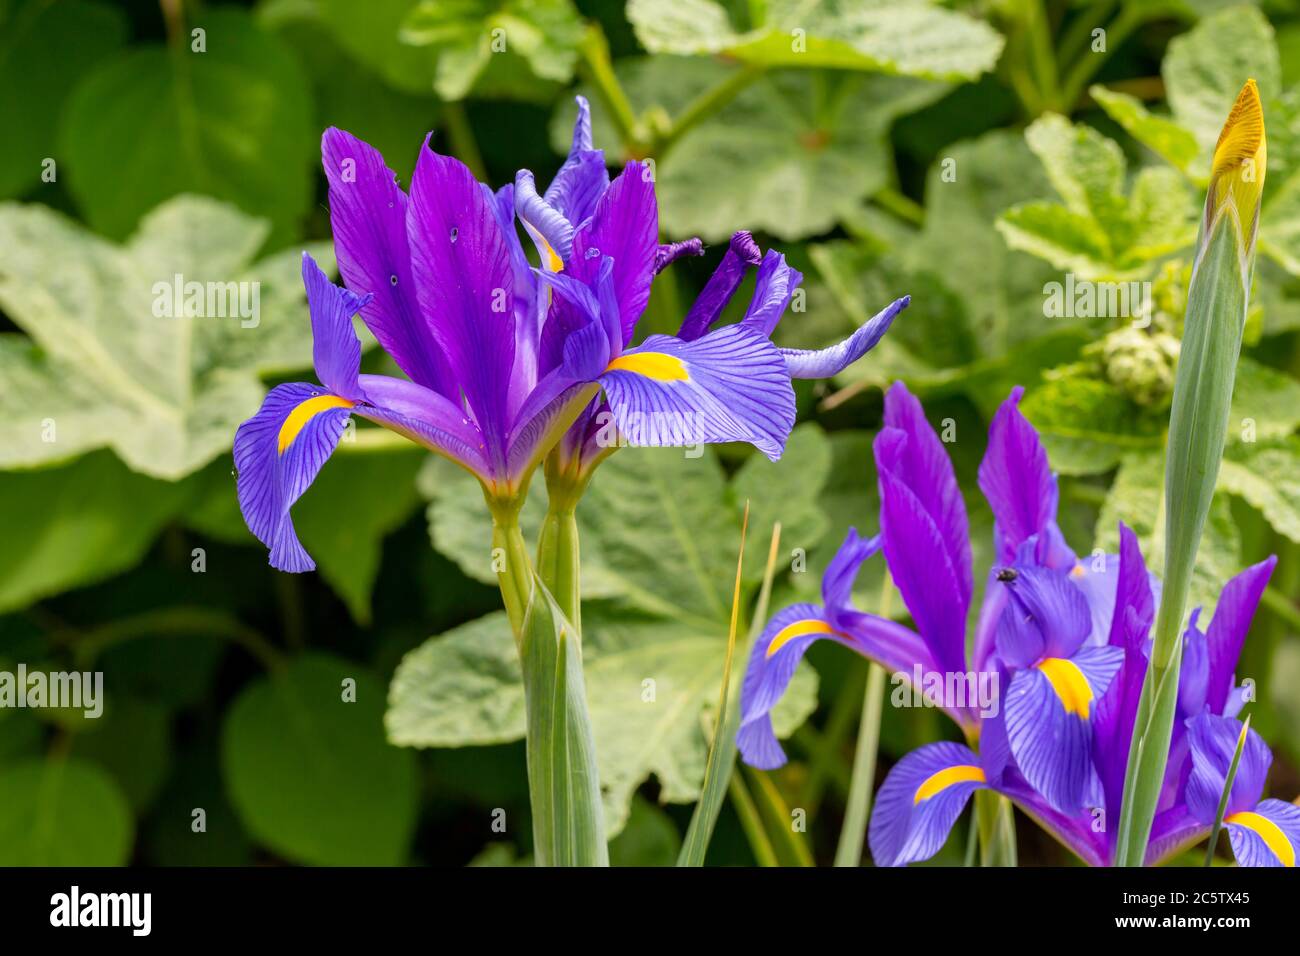 purple flowered Lilium in a german garden Stock Photo